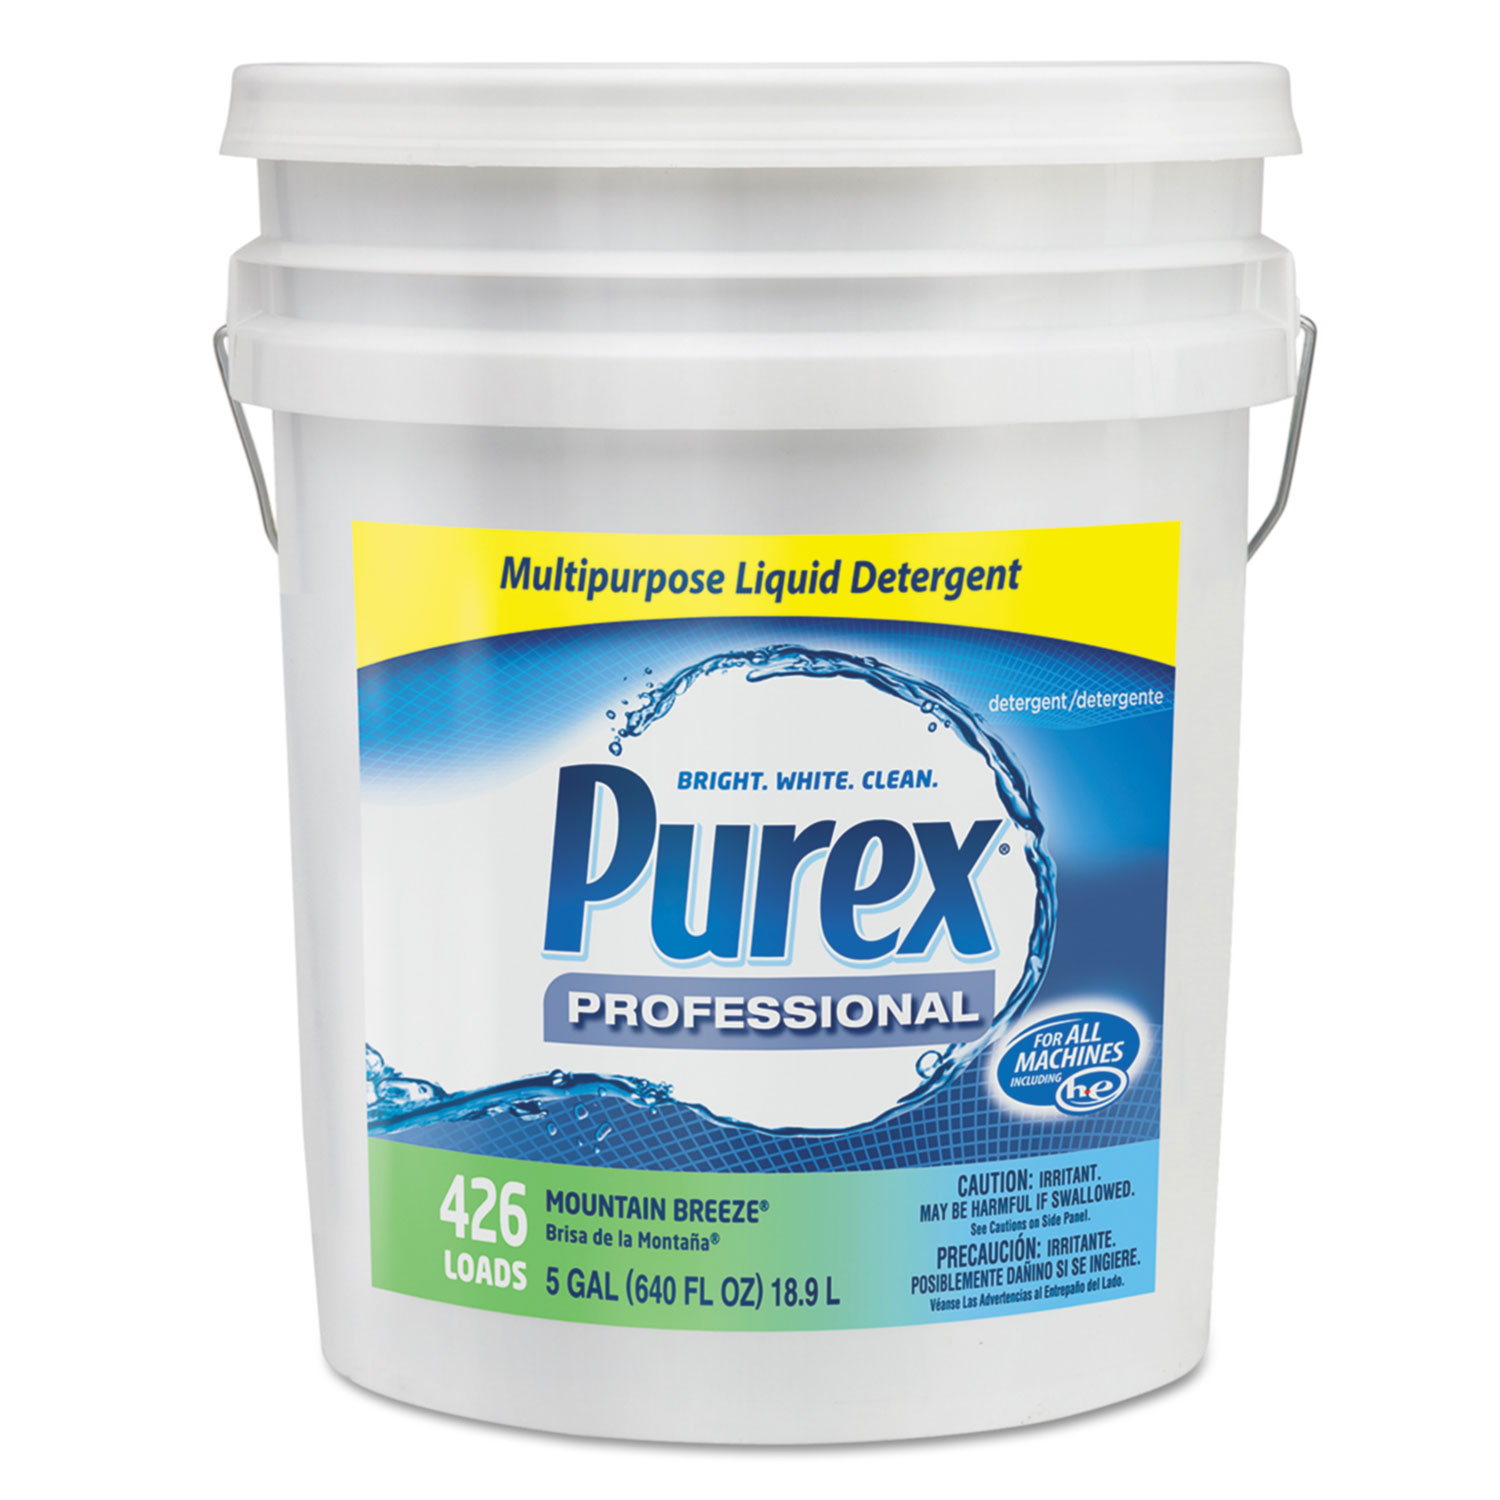 Purex Liquid Laundry Detergent - Mountain Breeze, 5 Gallon Pail